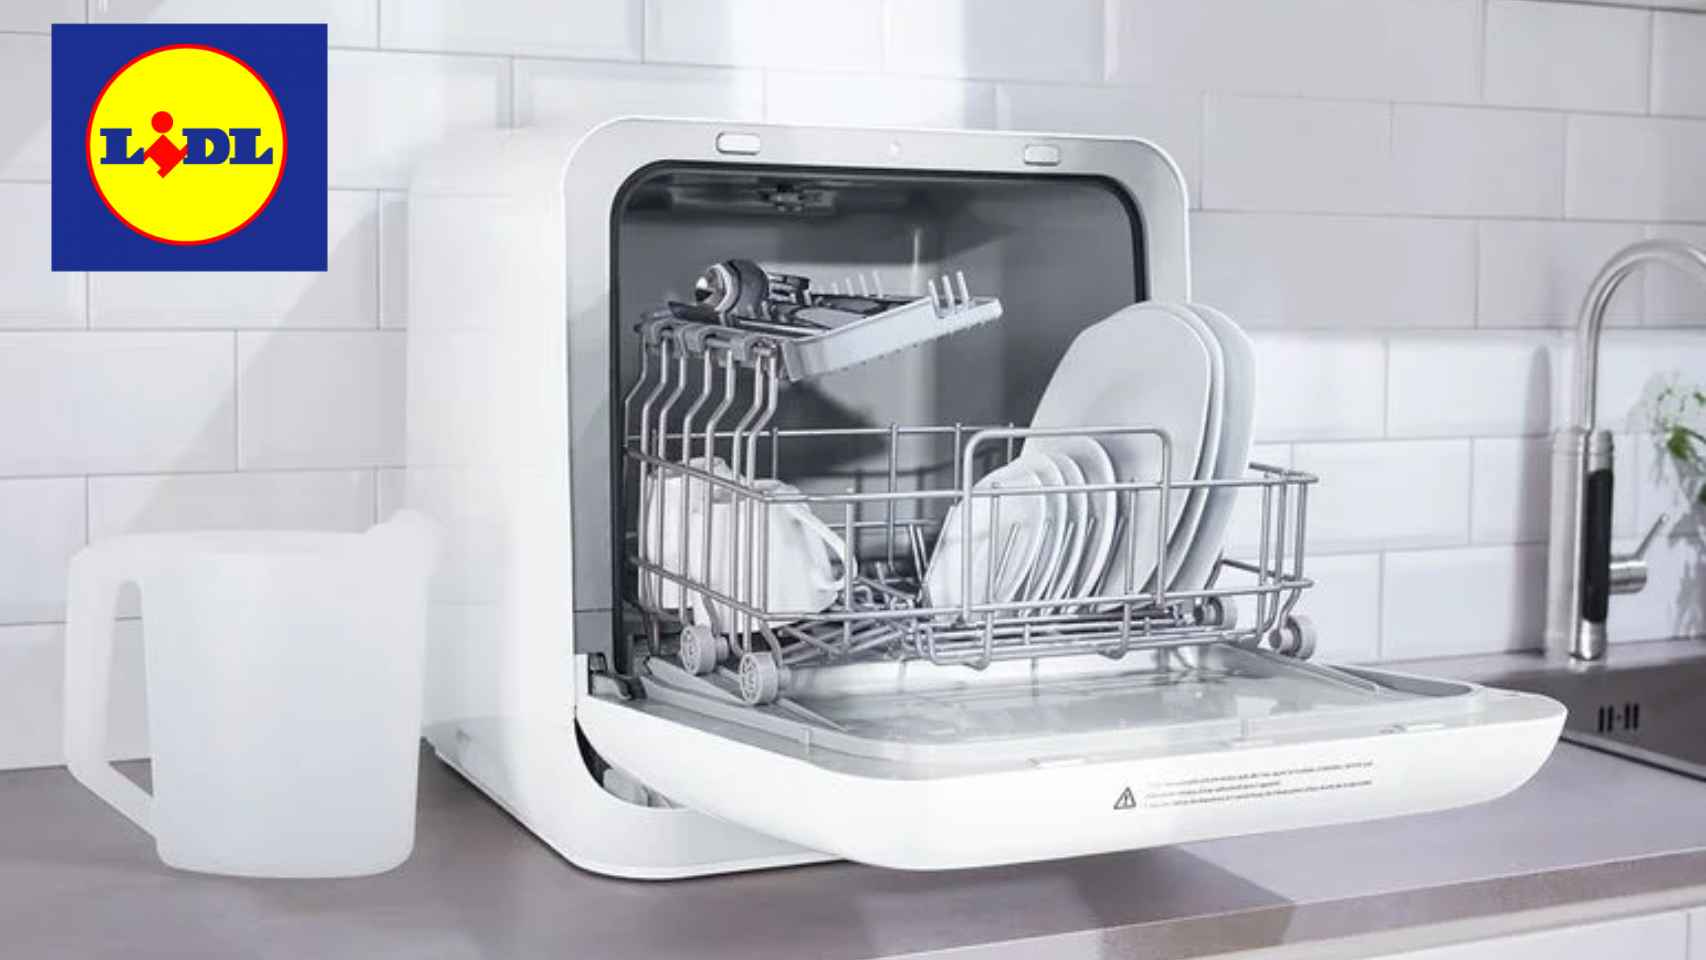 Lidl pone a la venta un lavavajillas compacto portátil a un precio muy competitivo.